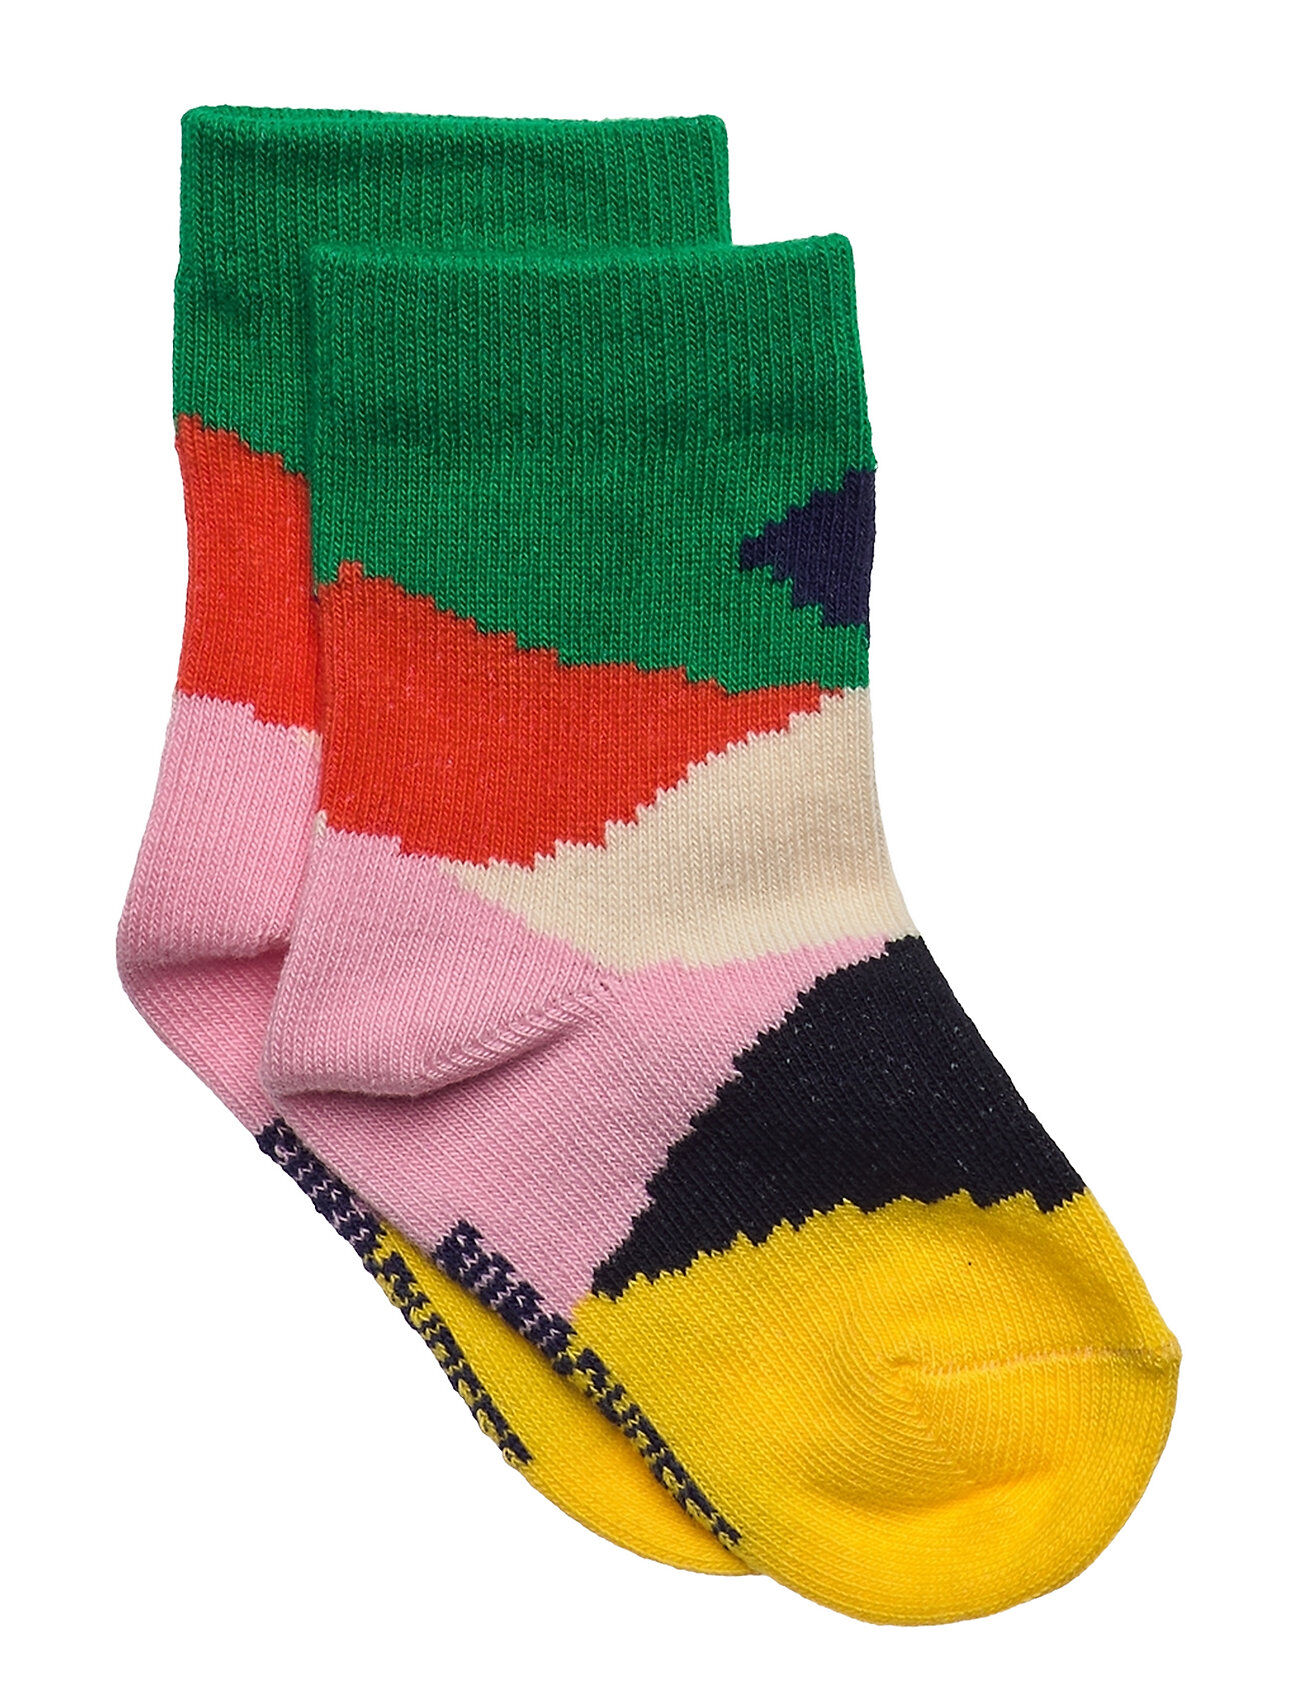 Bobo Choses Multi Color Block Baby Socks Socks & Tights Socks Multi/mønstret Bobo Choses